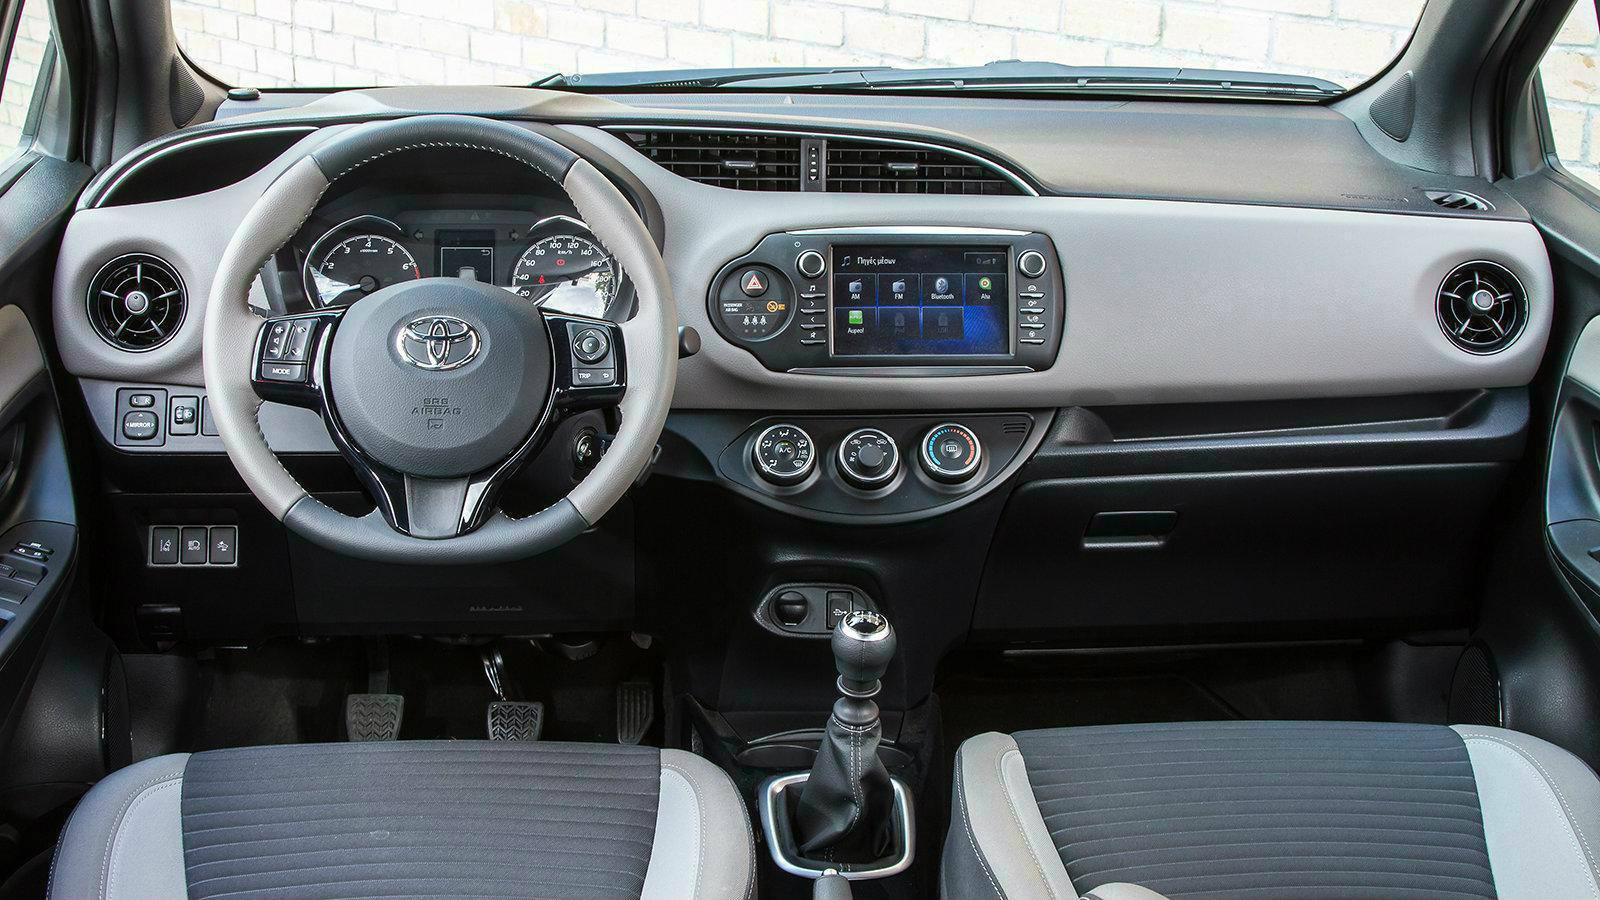 Toyota Yaris 1,0 VVTi 69 PS